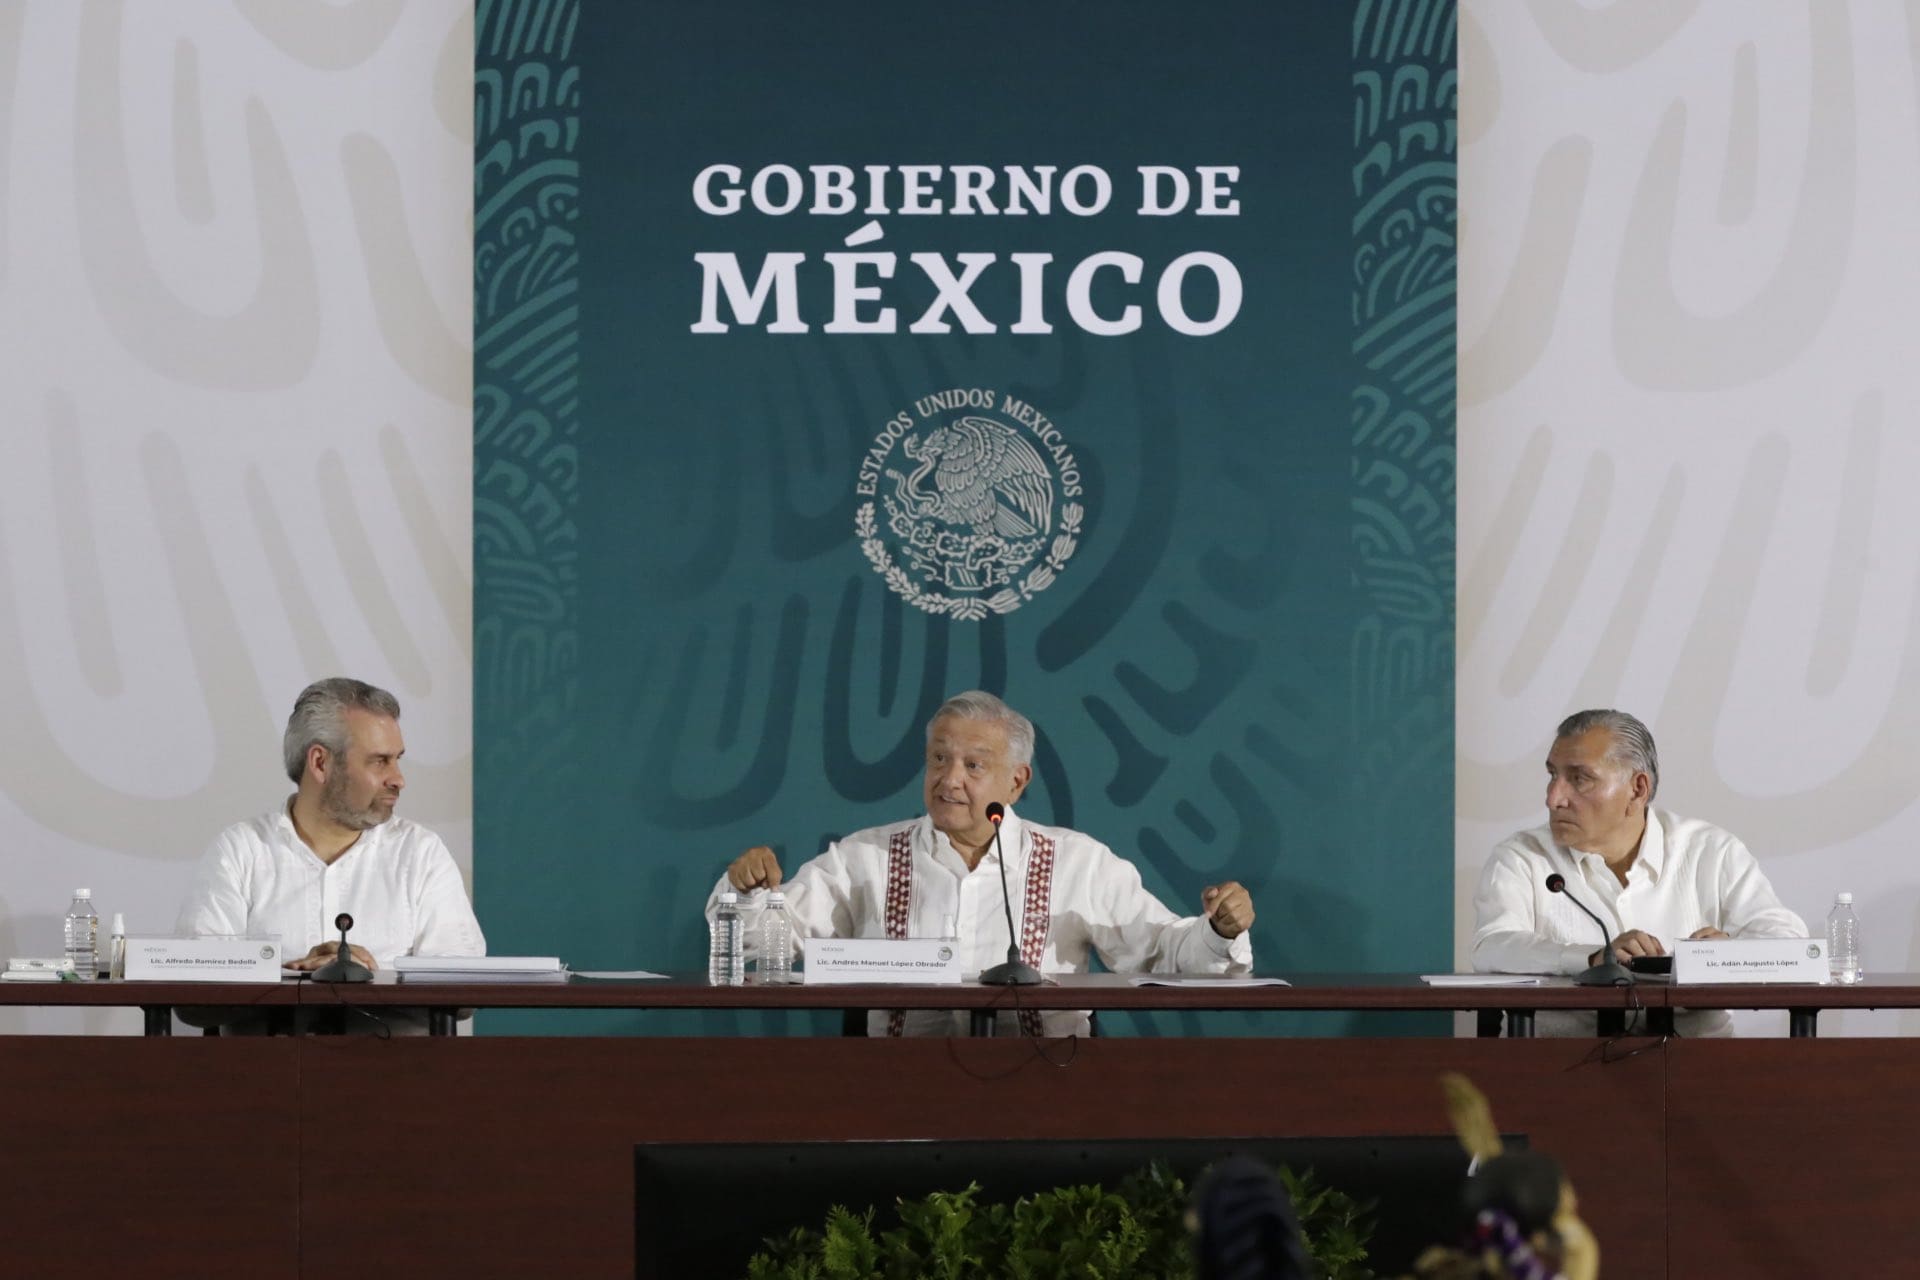 El CJNG se replegó en Michoacán, asegura Sedena durante la presentación del plan de apoyo para el estado, encabezada por AMLO.